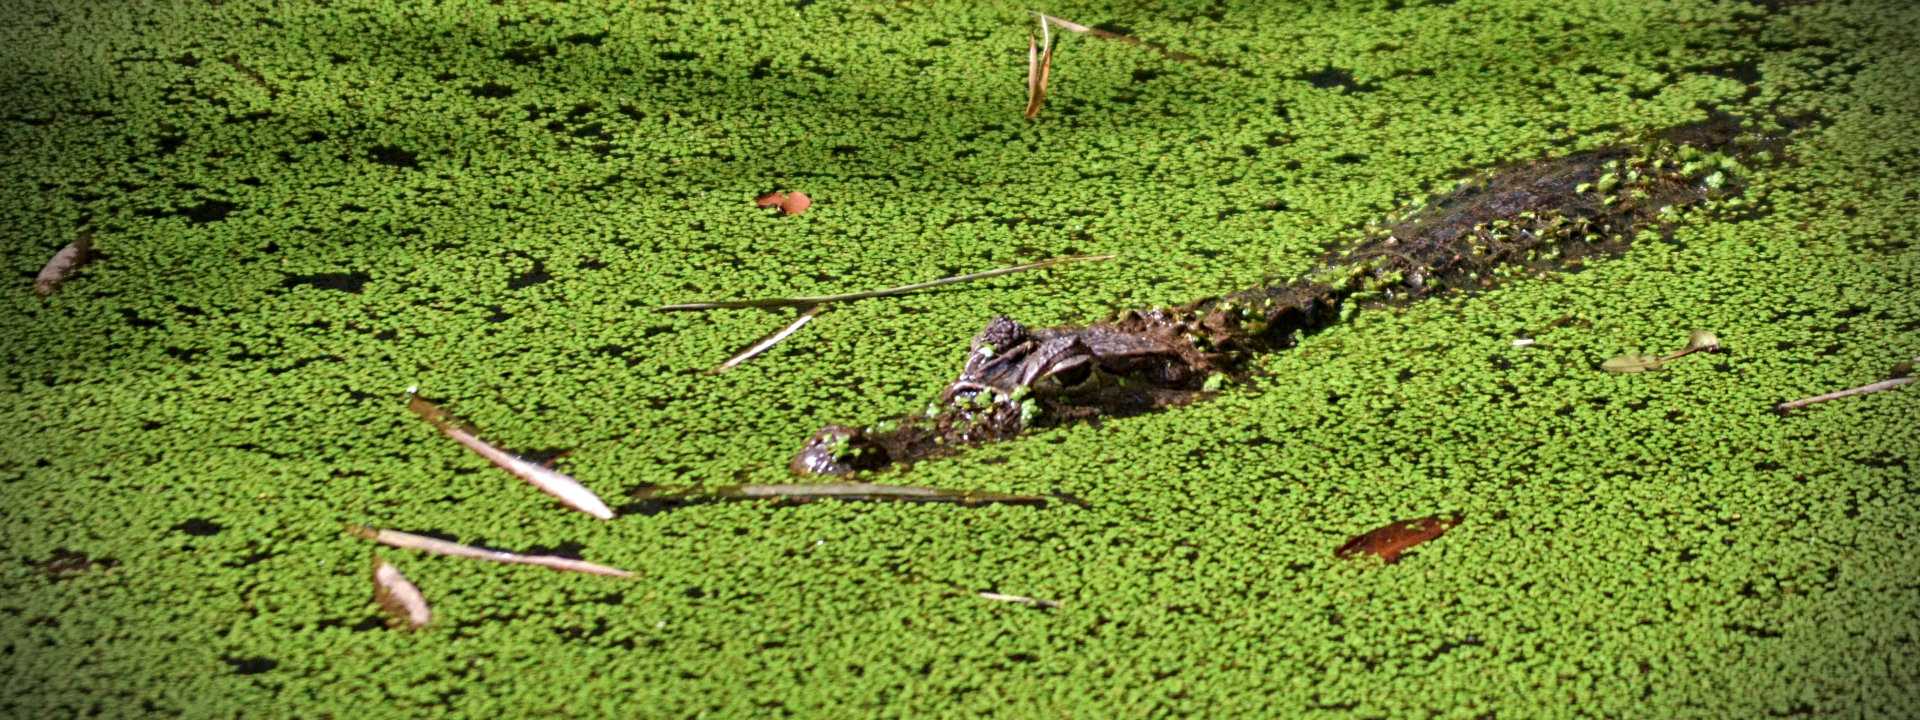 Wild Crocodile in Costa Rica